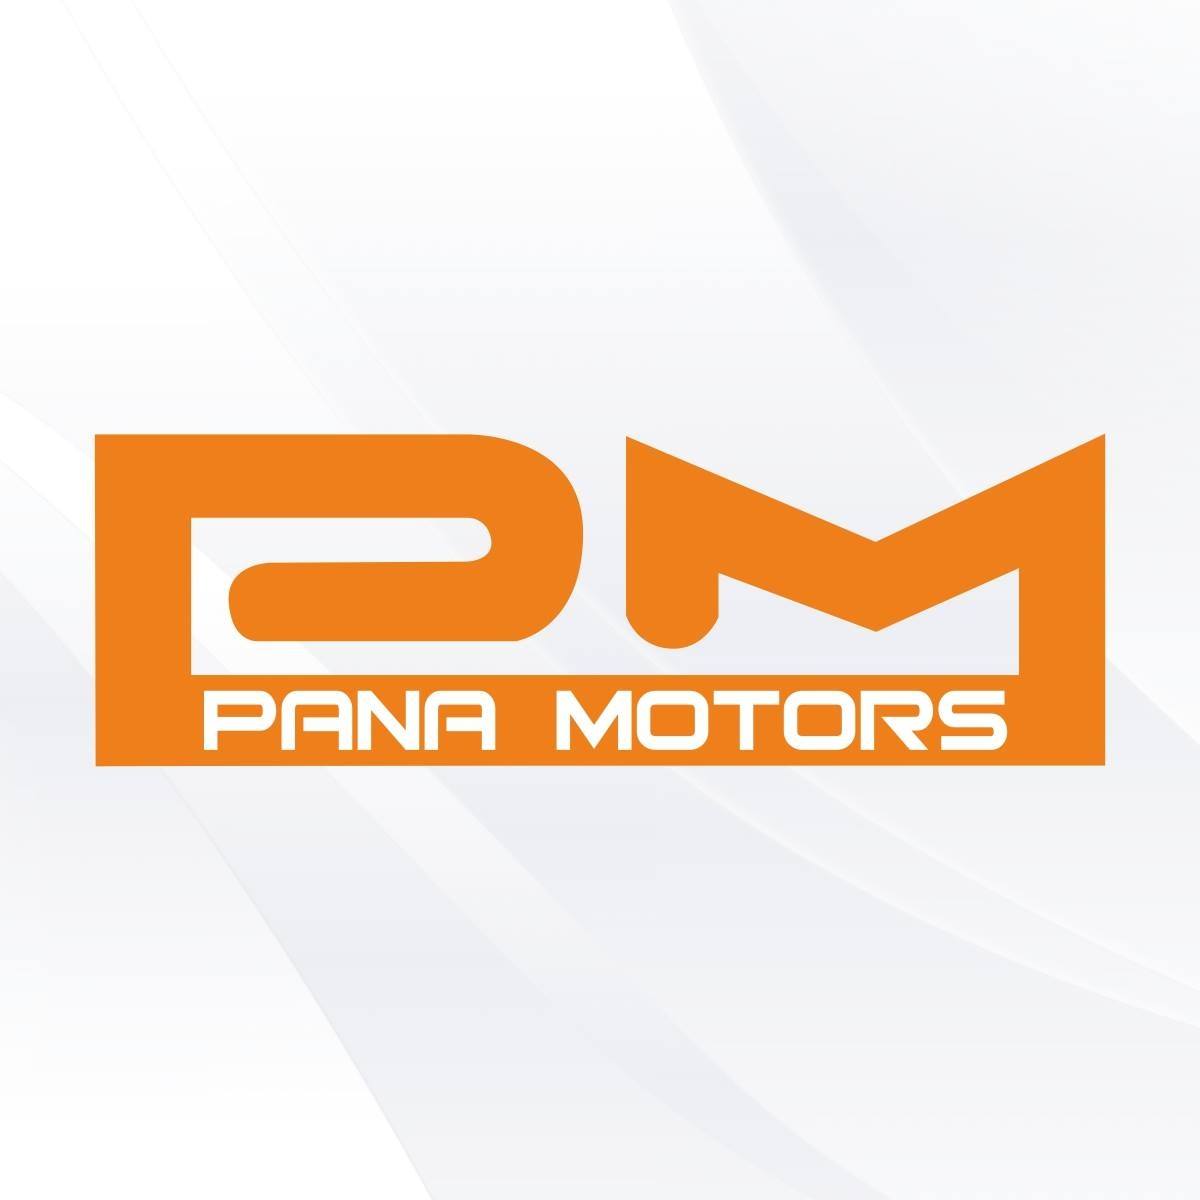 Pana Motors